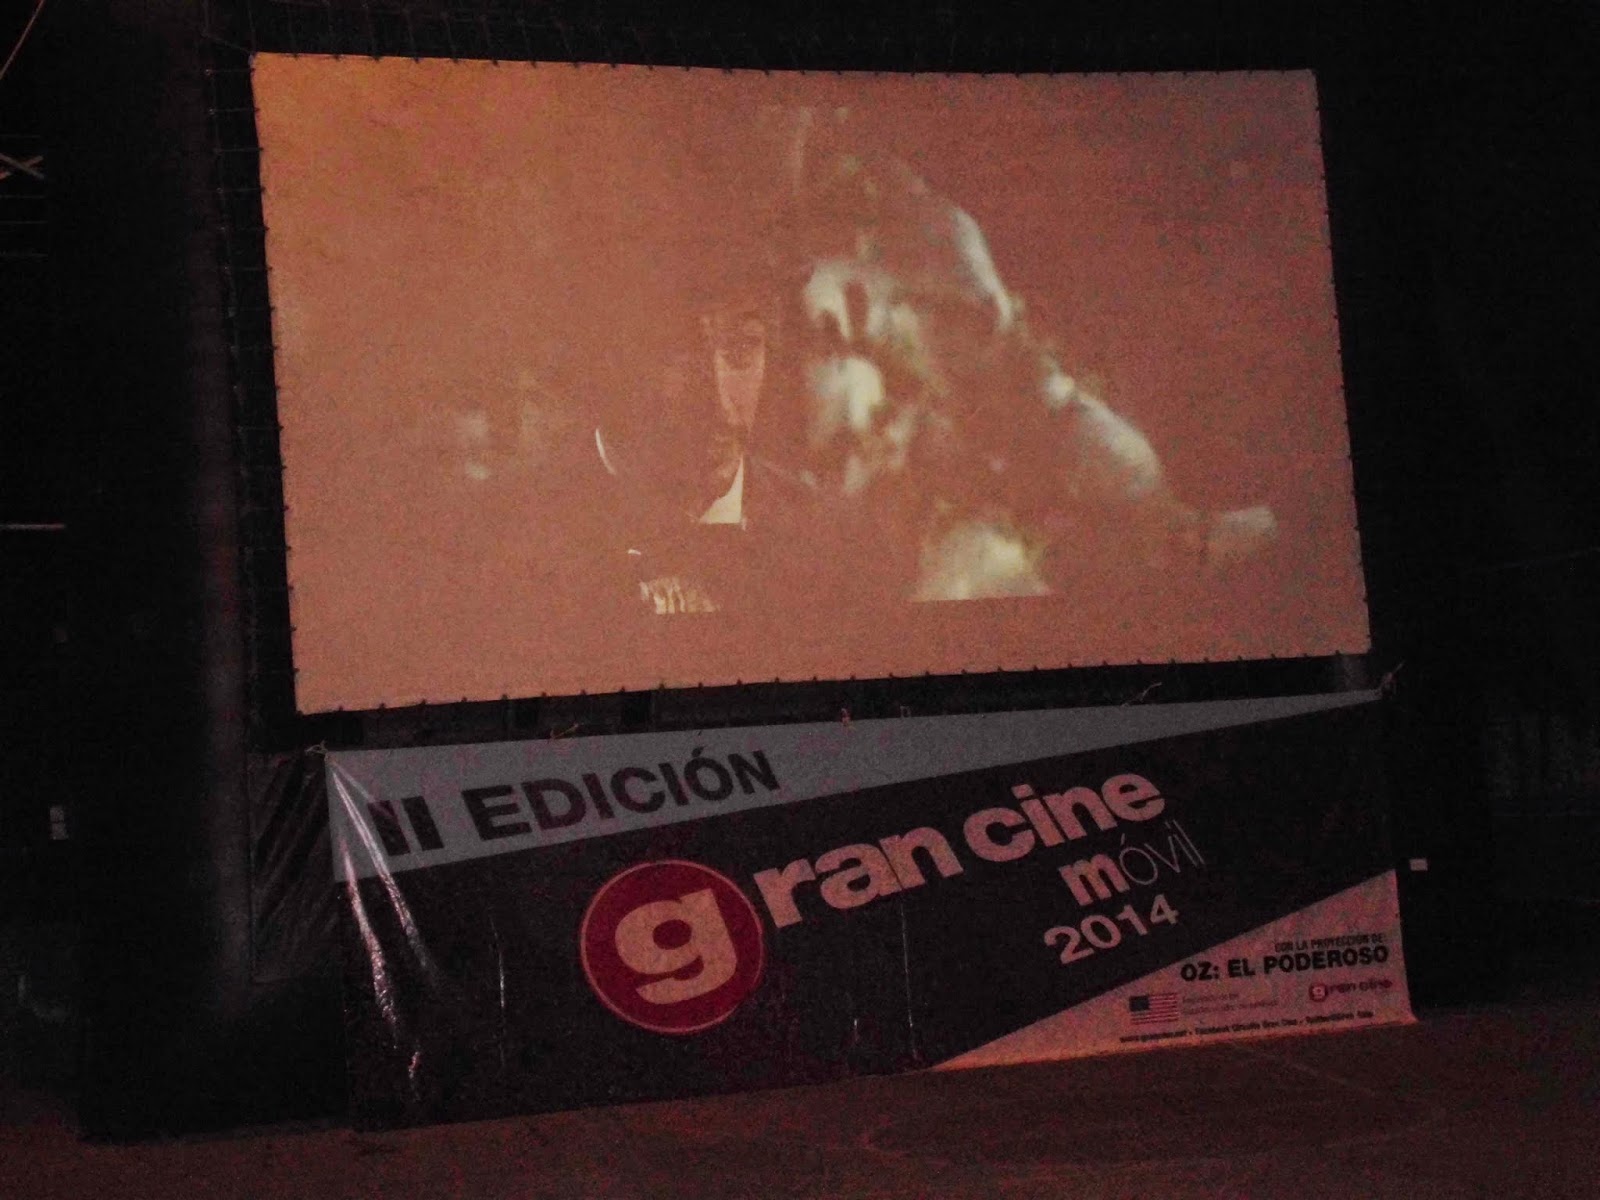 Cine móvil arrancó este miércoles y culmina este jueves en cancha Cajuarito con Proyección de película: “OZ: El Poderoso”, en Apure.